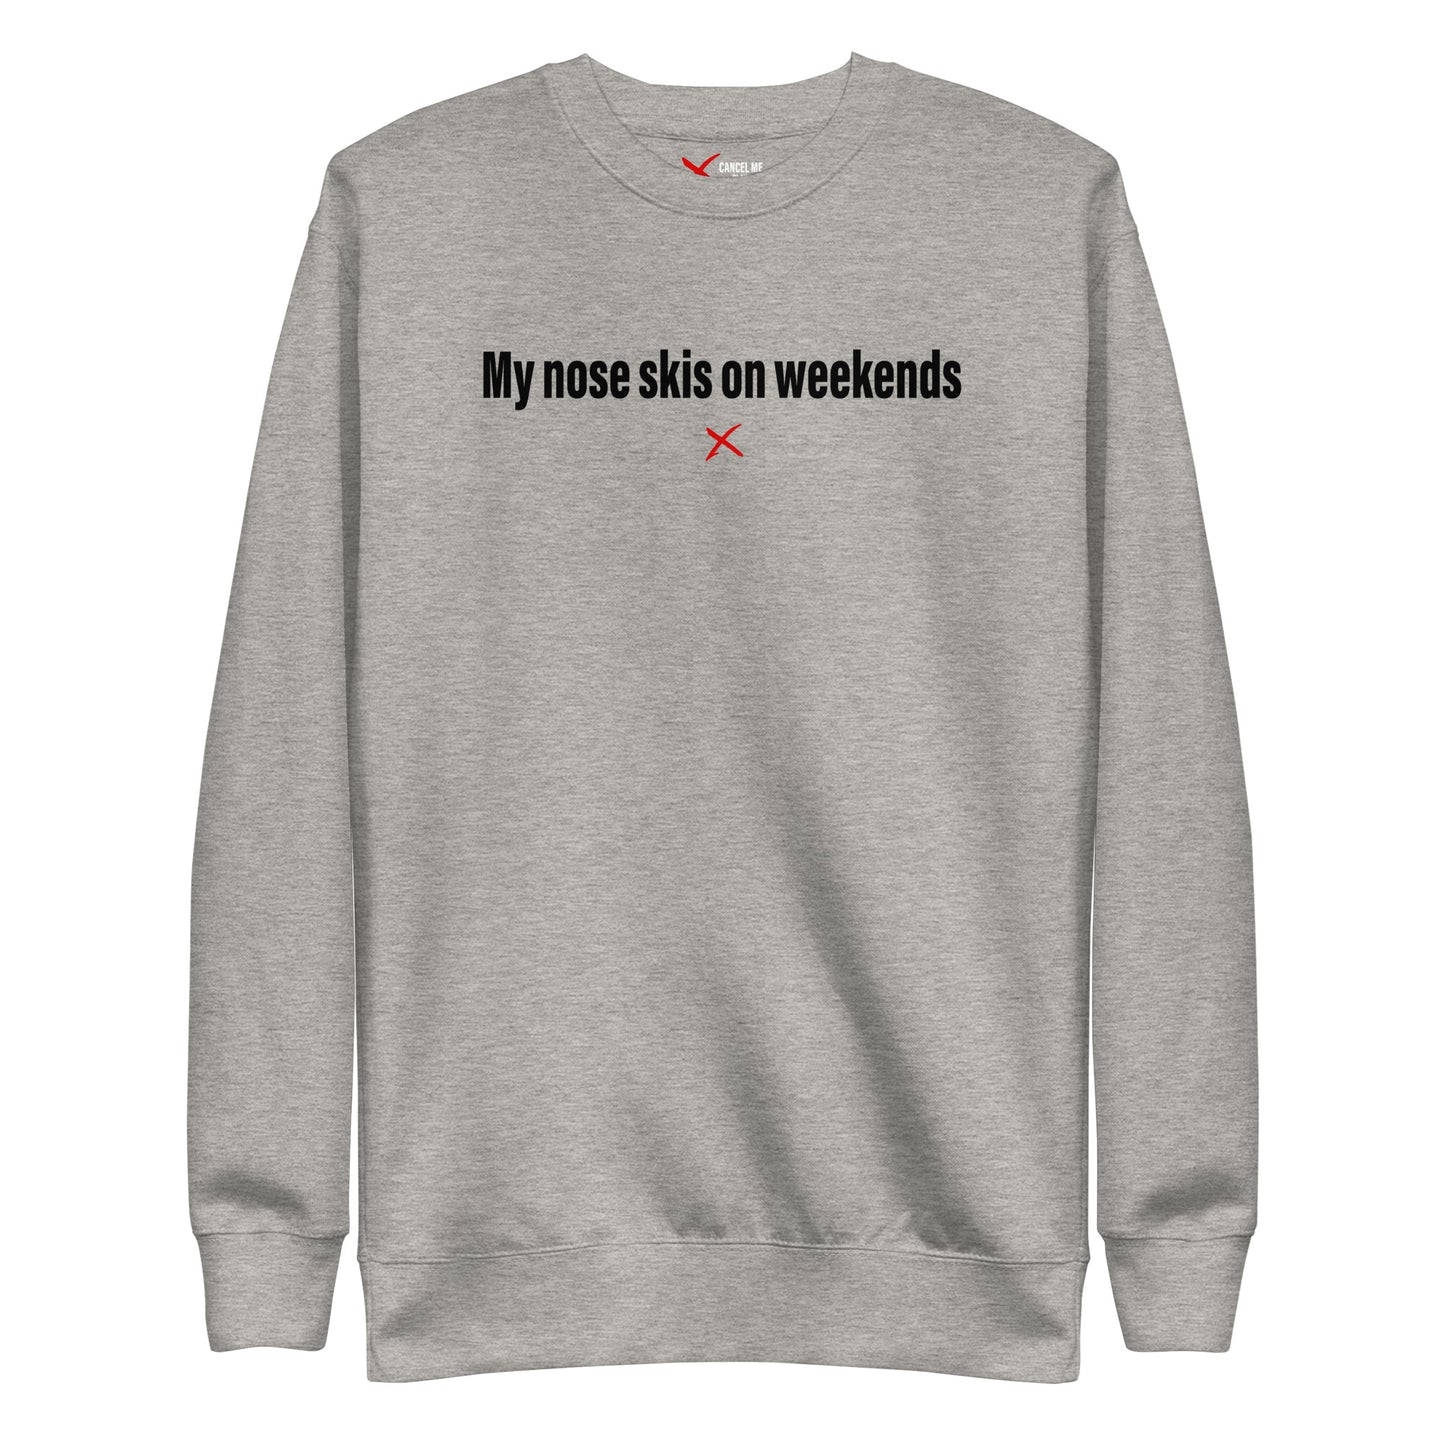 My nose skis on weekends - Sweatshirt